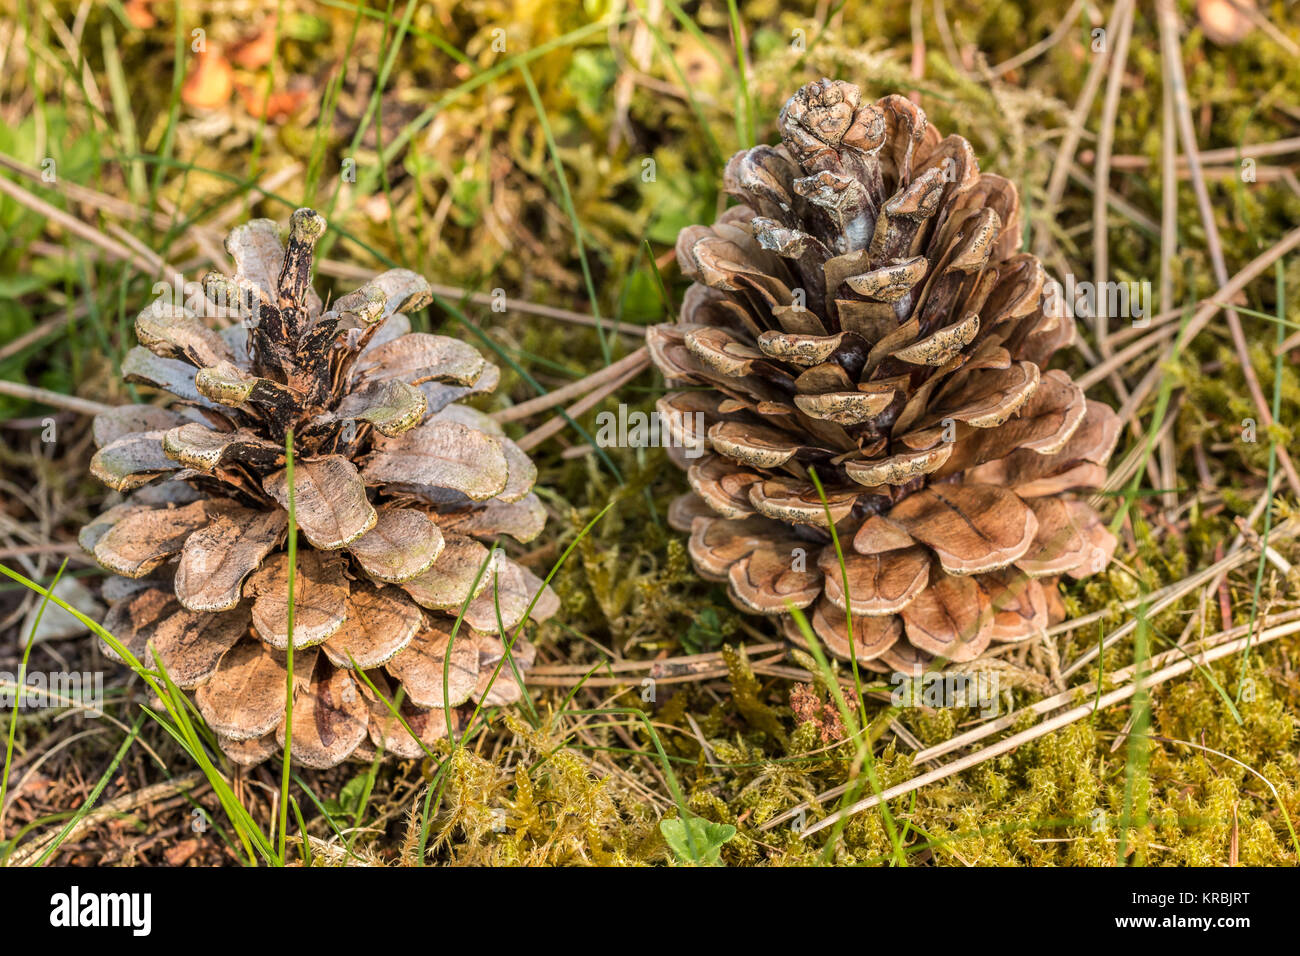 Fallen fir cones on the green moss of the garden Stock Photo